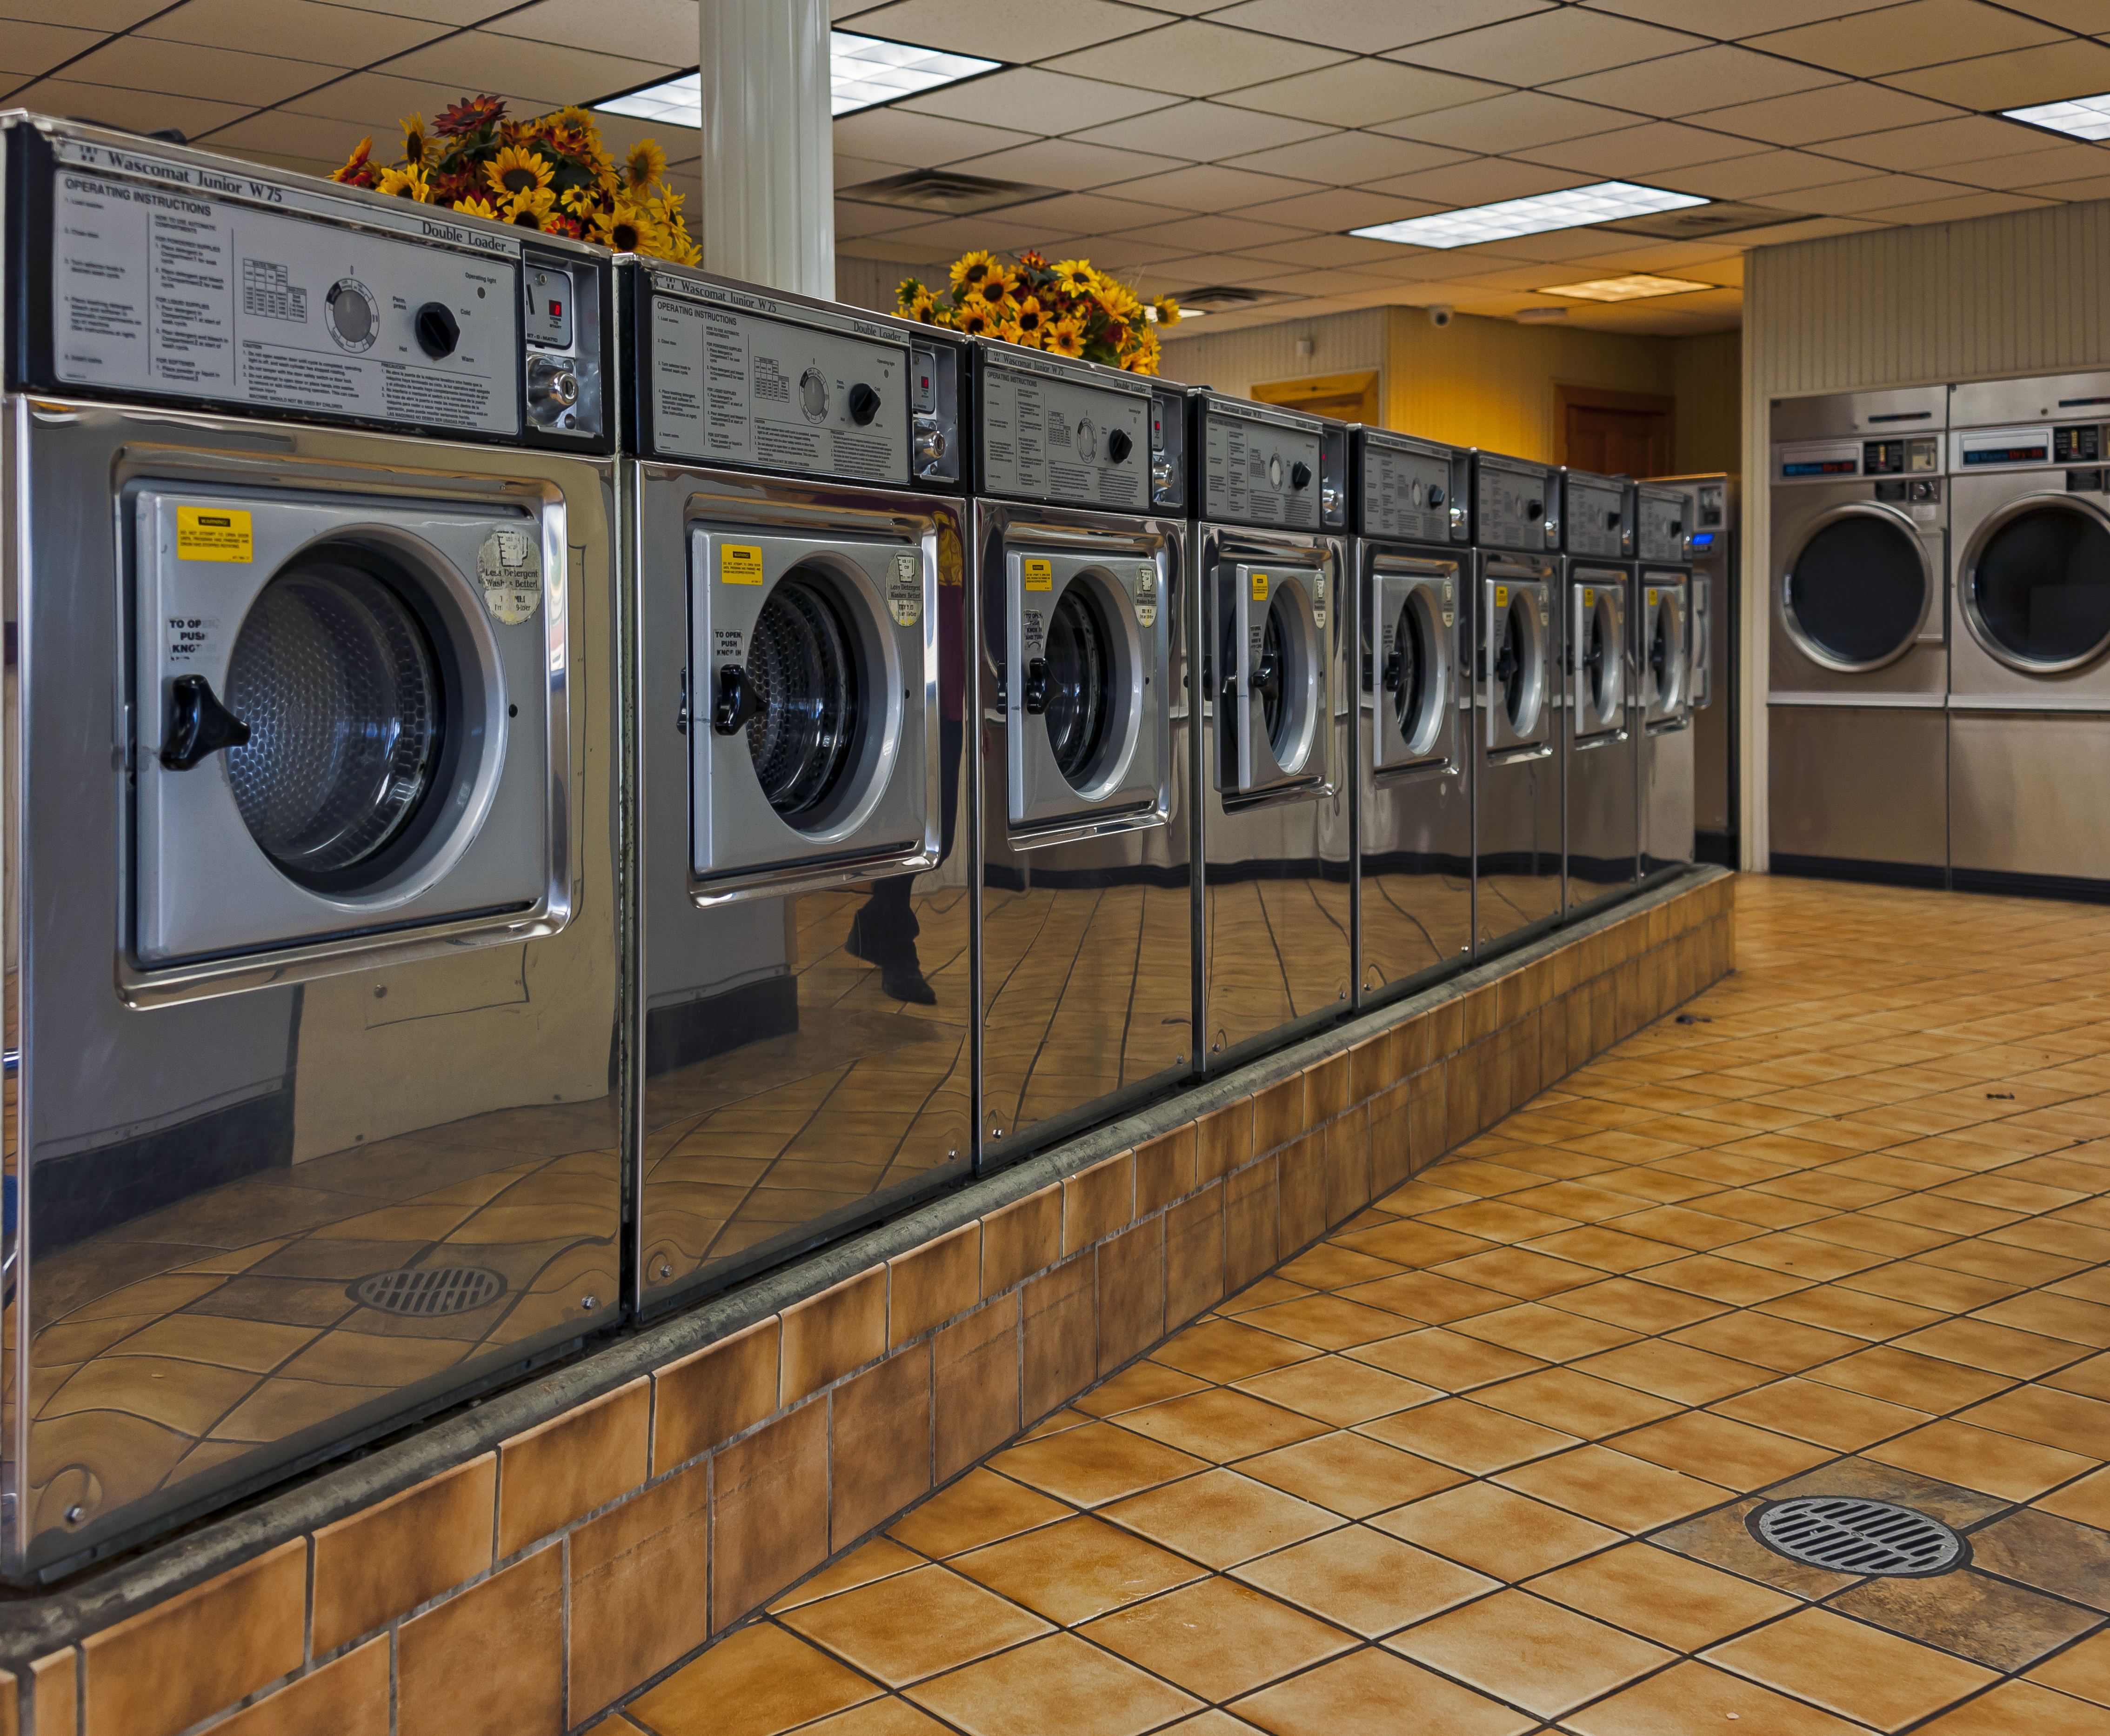 Lavado de ropa - Wikipedia, la enciclopedia libre